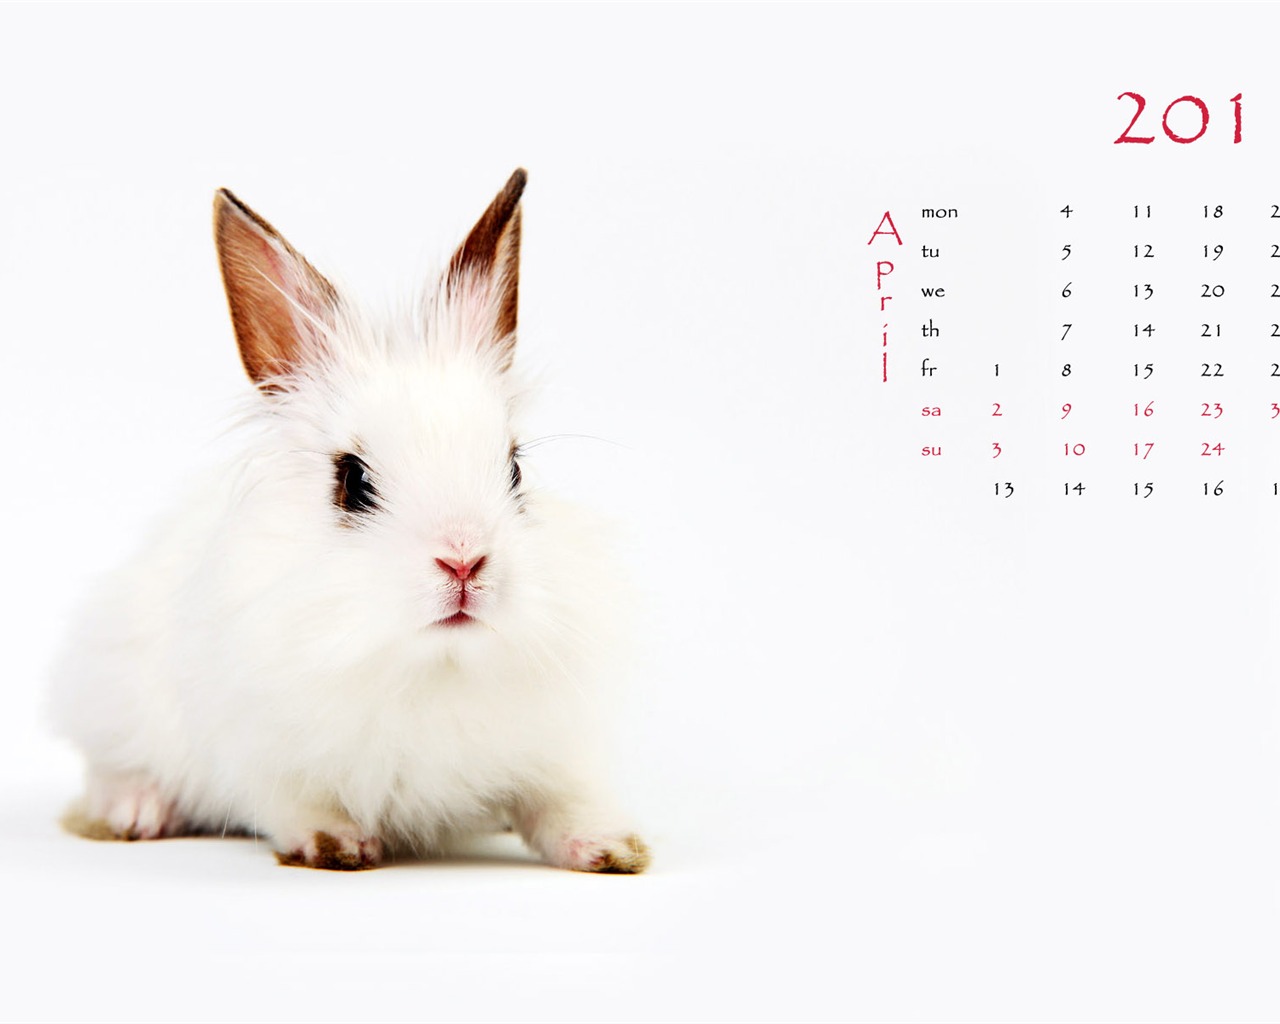 2011兔年日历 壁纸(一)4 - 1280x1024